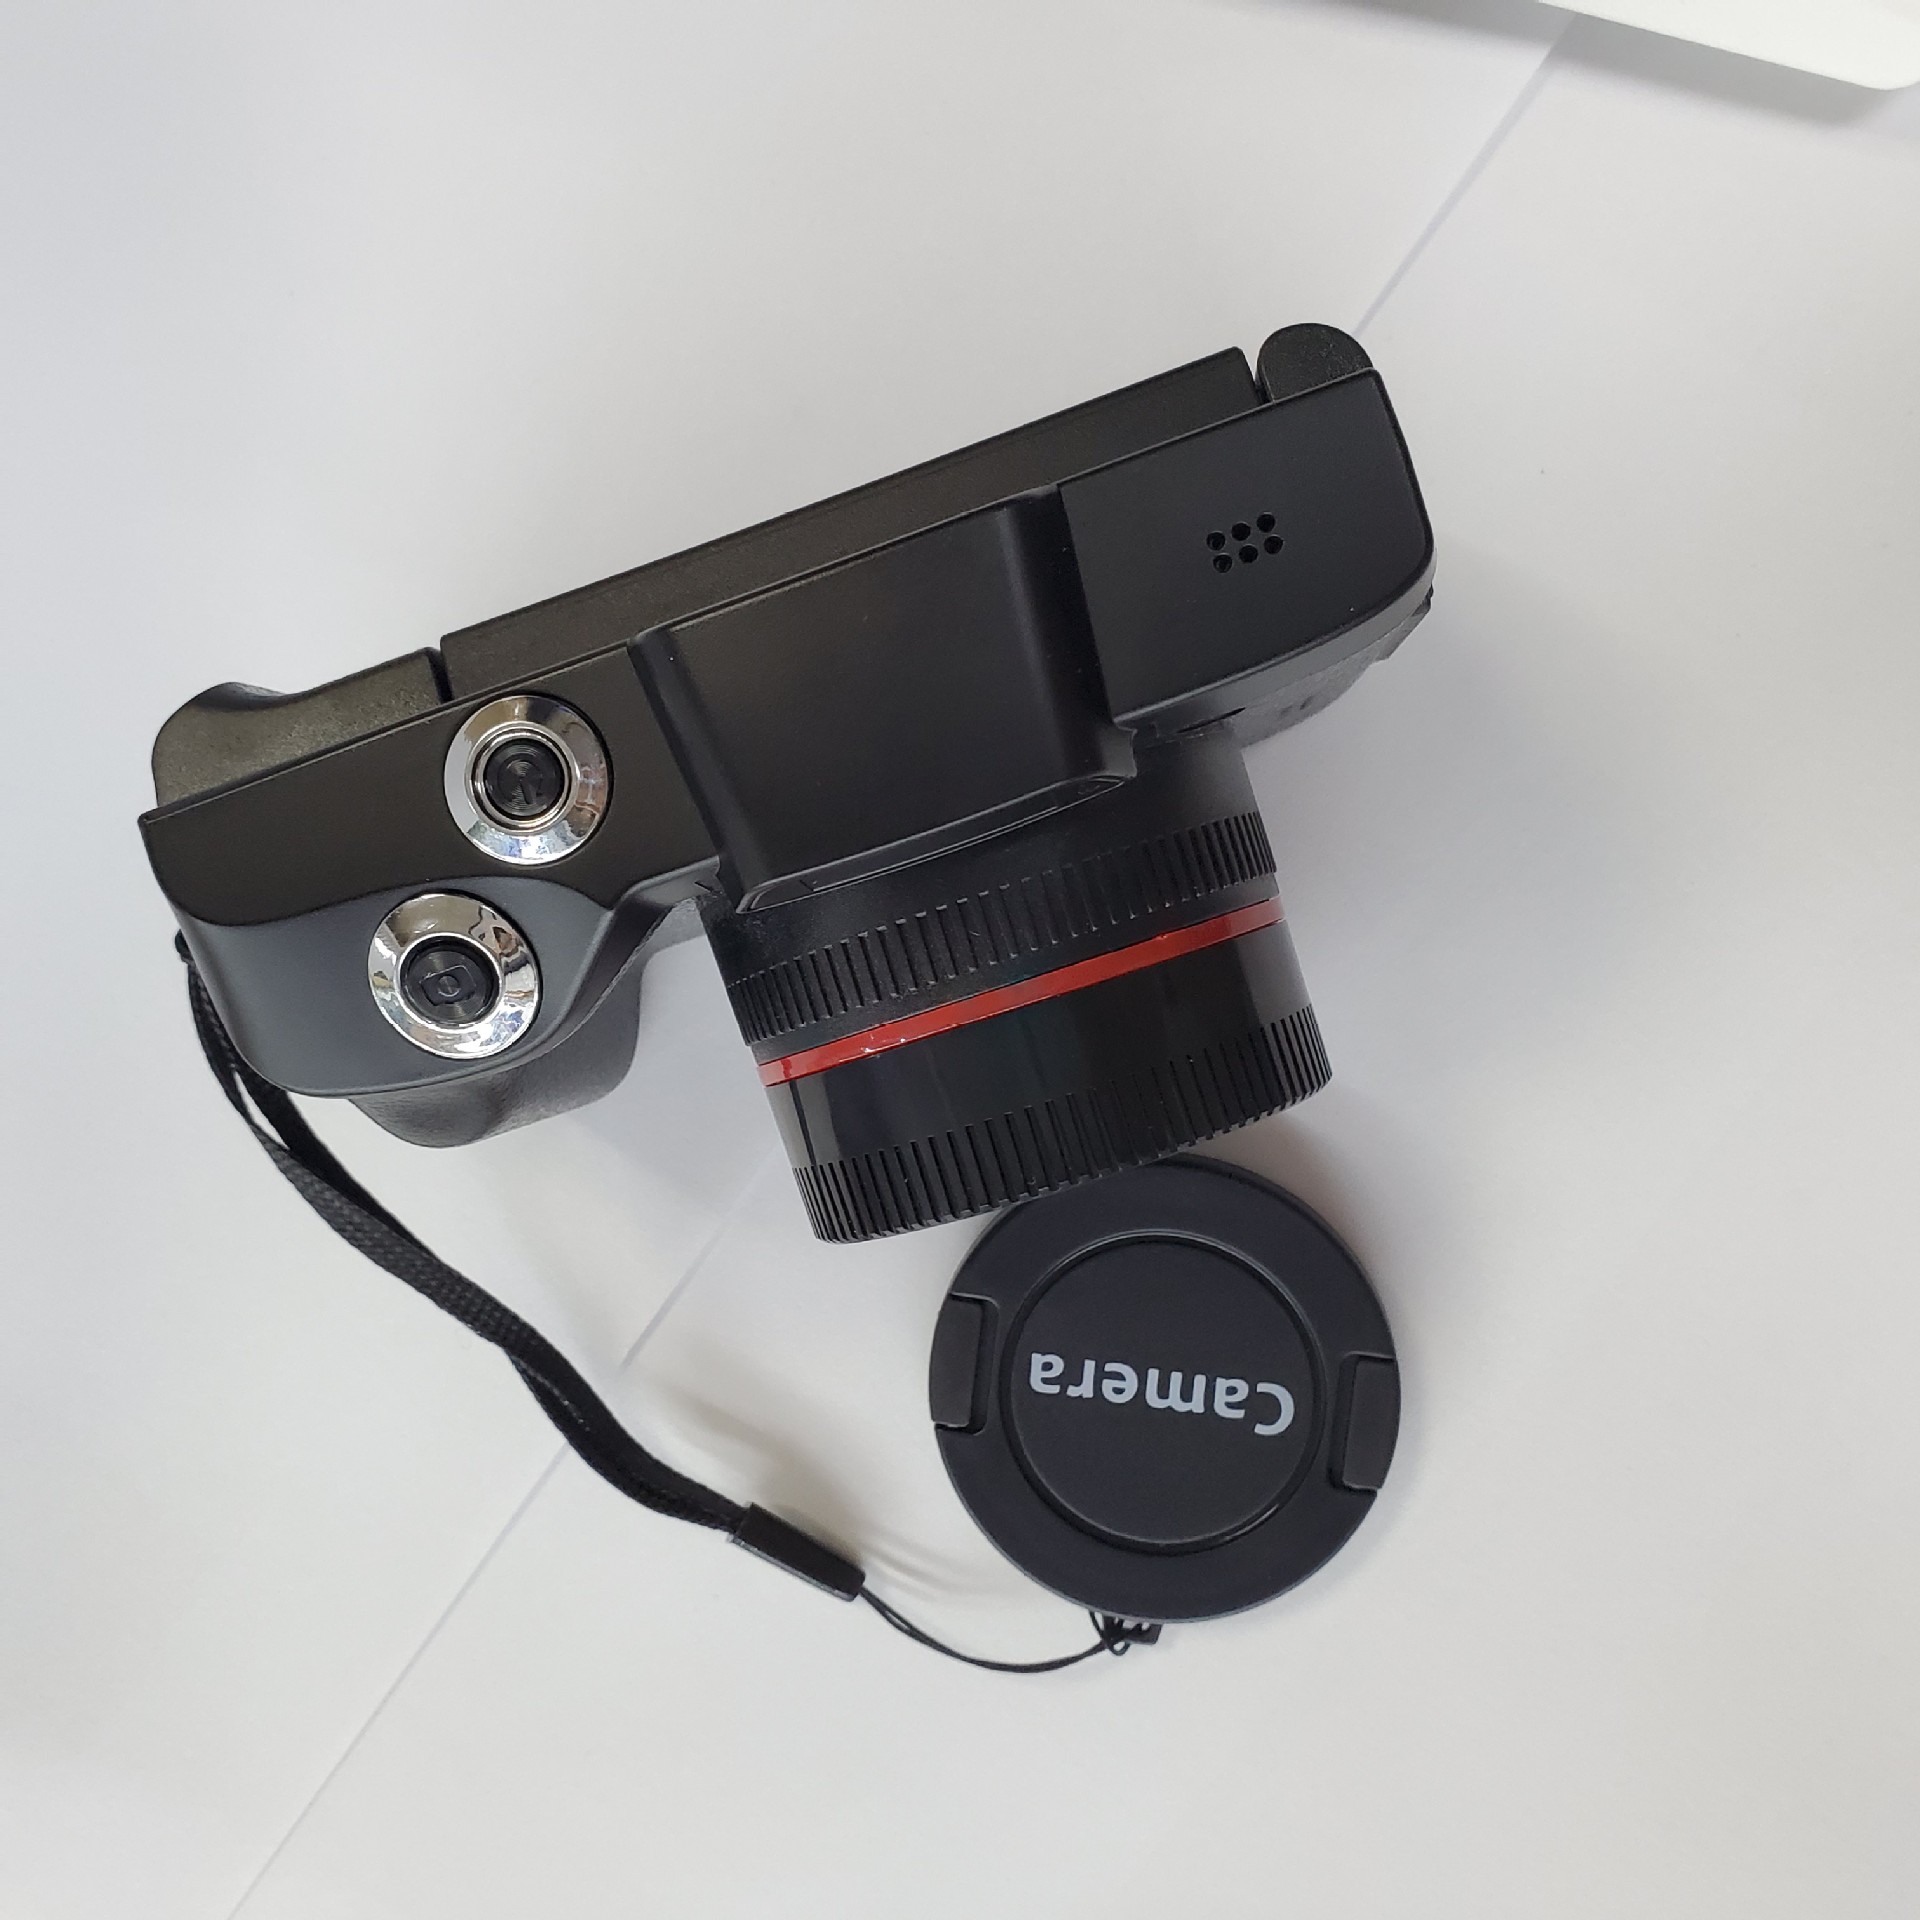 デジタルカメラ2.4インチTFT LCDスクリーンフルHD 1080P 16MPカメラプロフェッショナルビデオカメラビデオカメラVlogging Flip Selfieビ